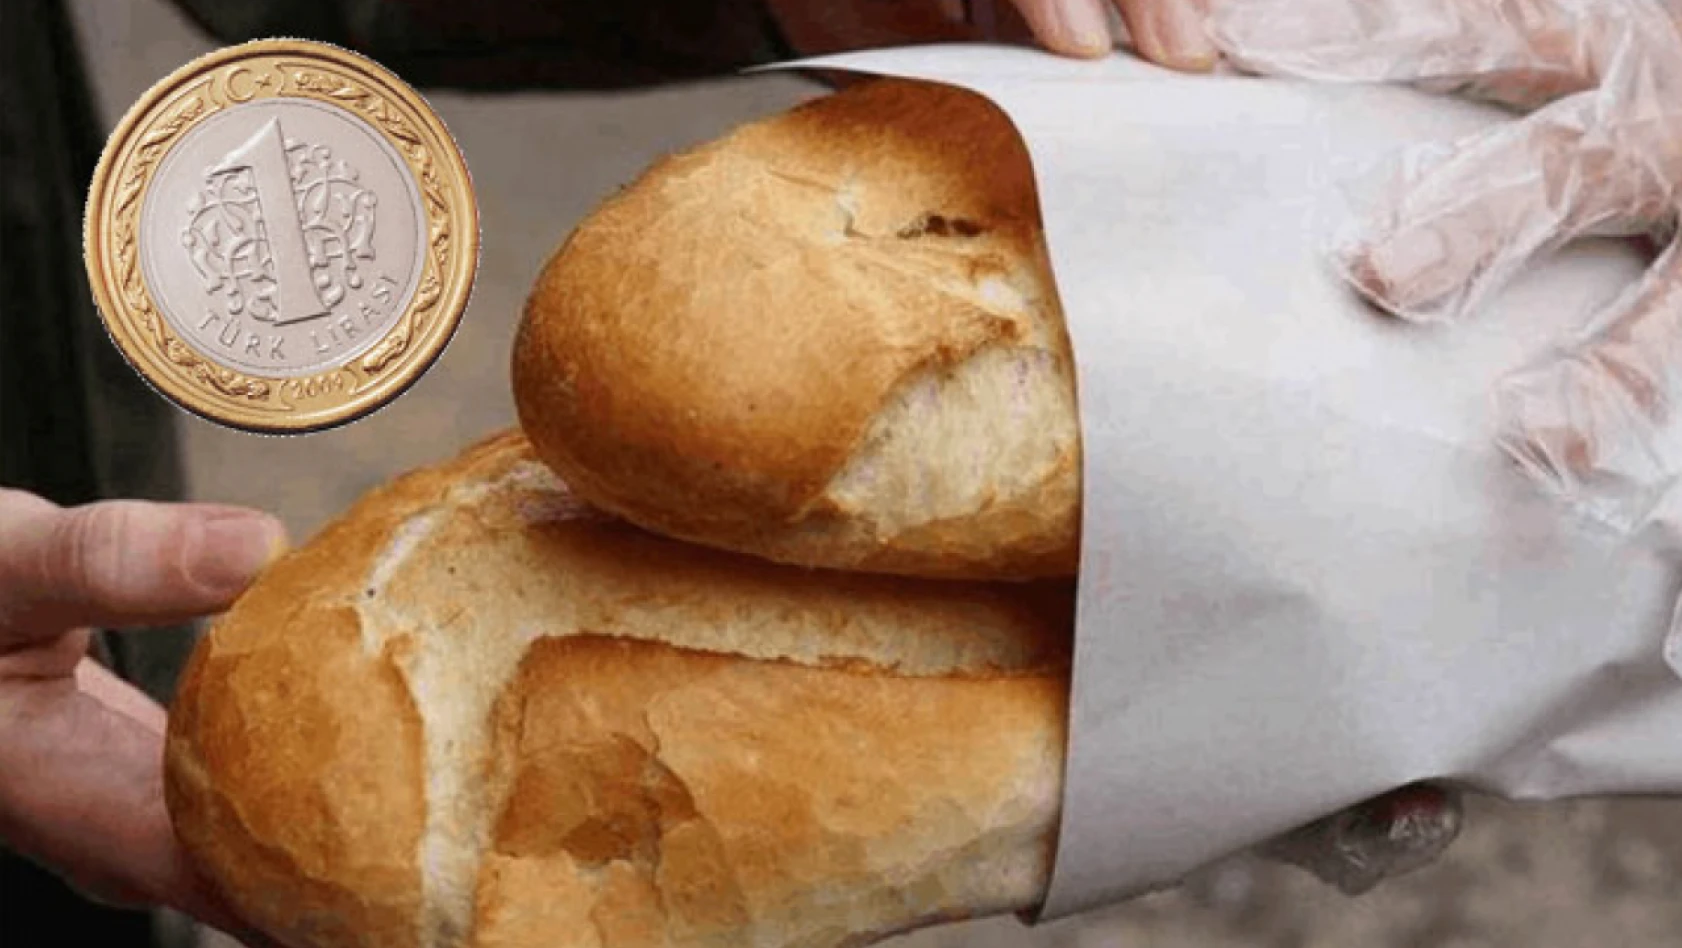 O ilde ekmek 1 lira olacak – Kayseri ekmek fiyatları